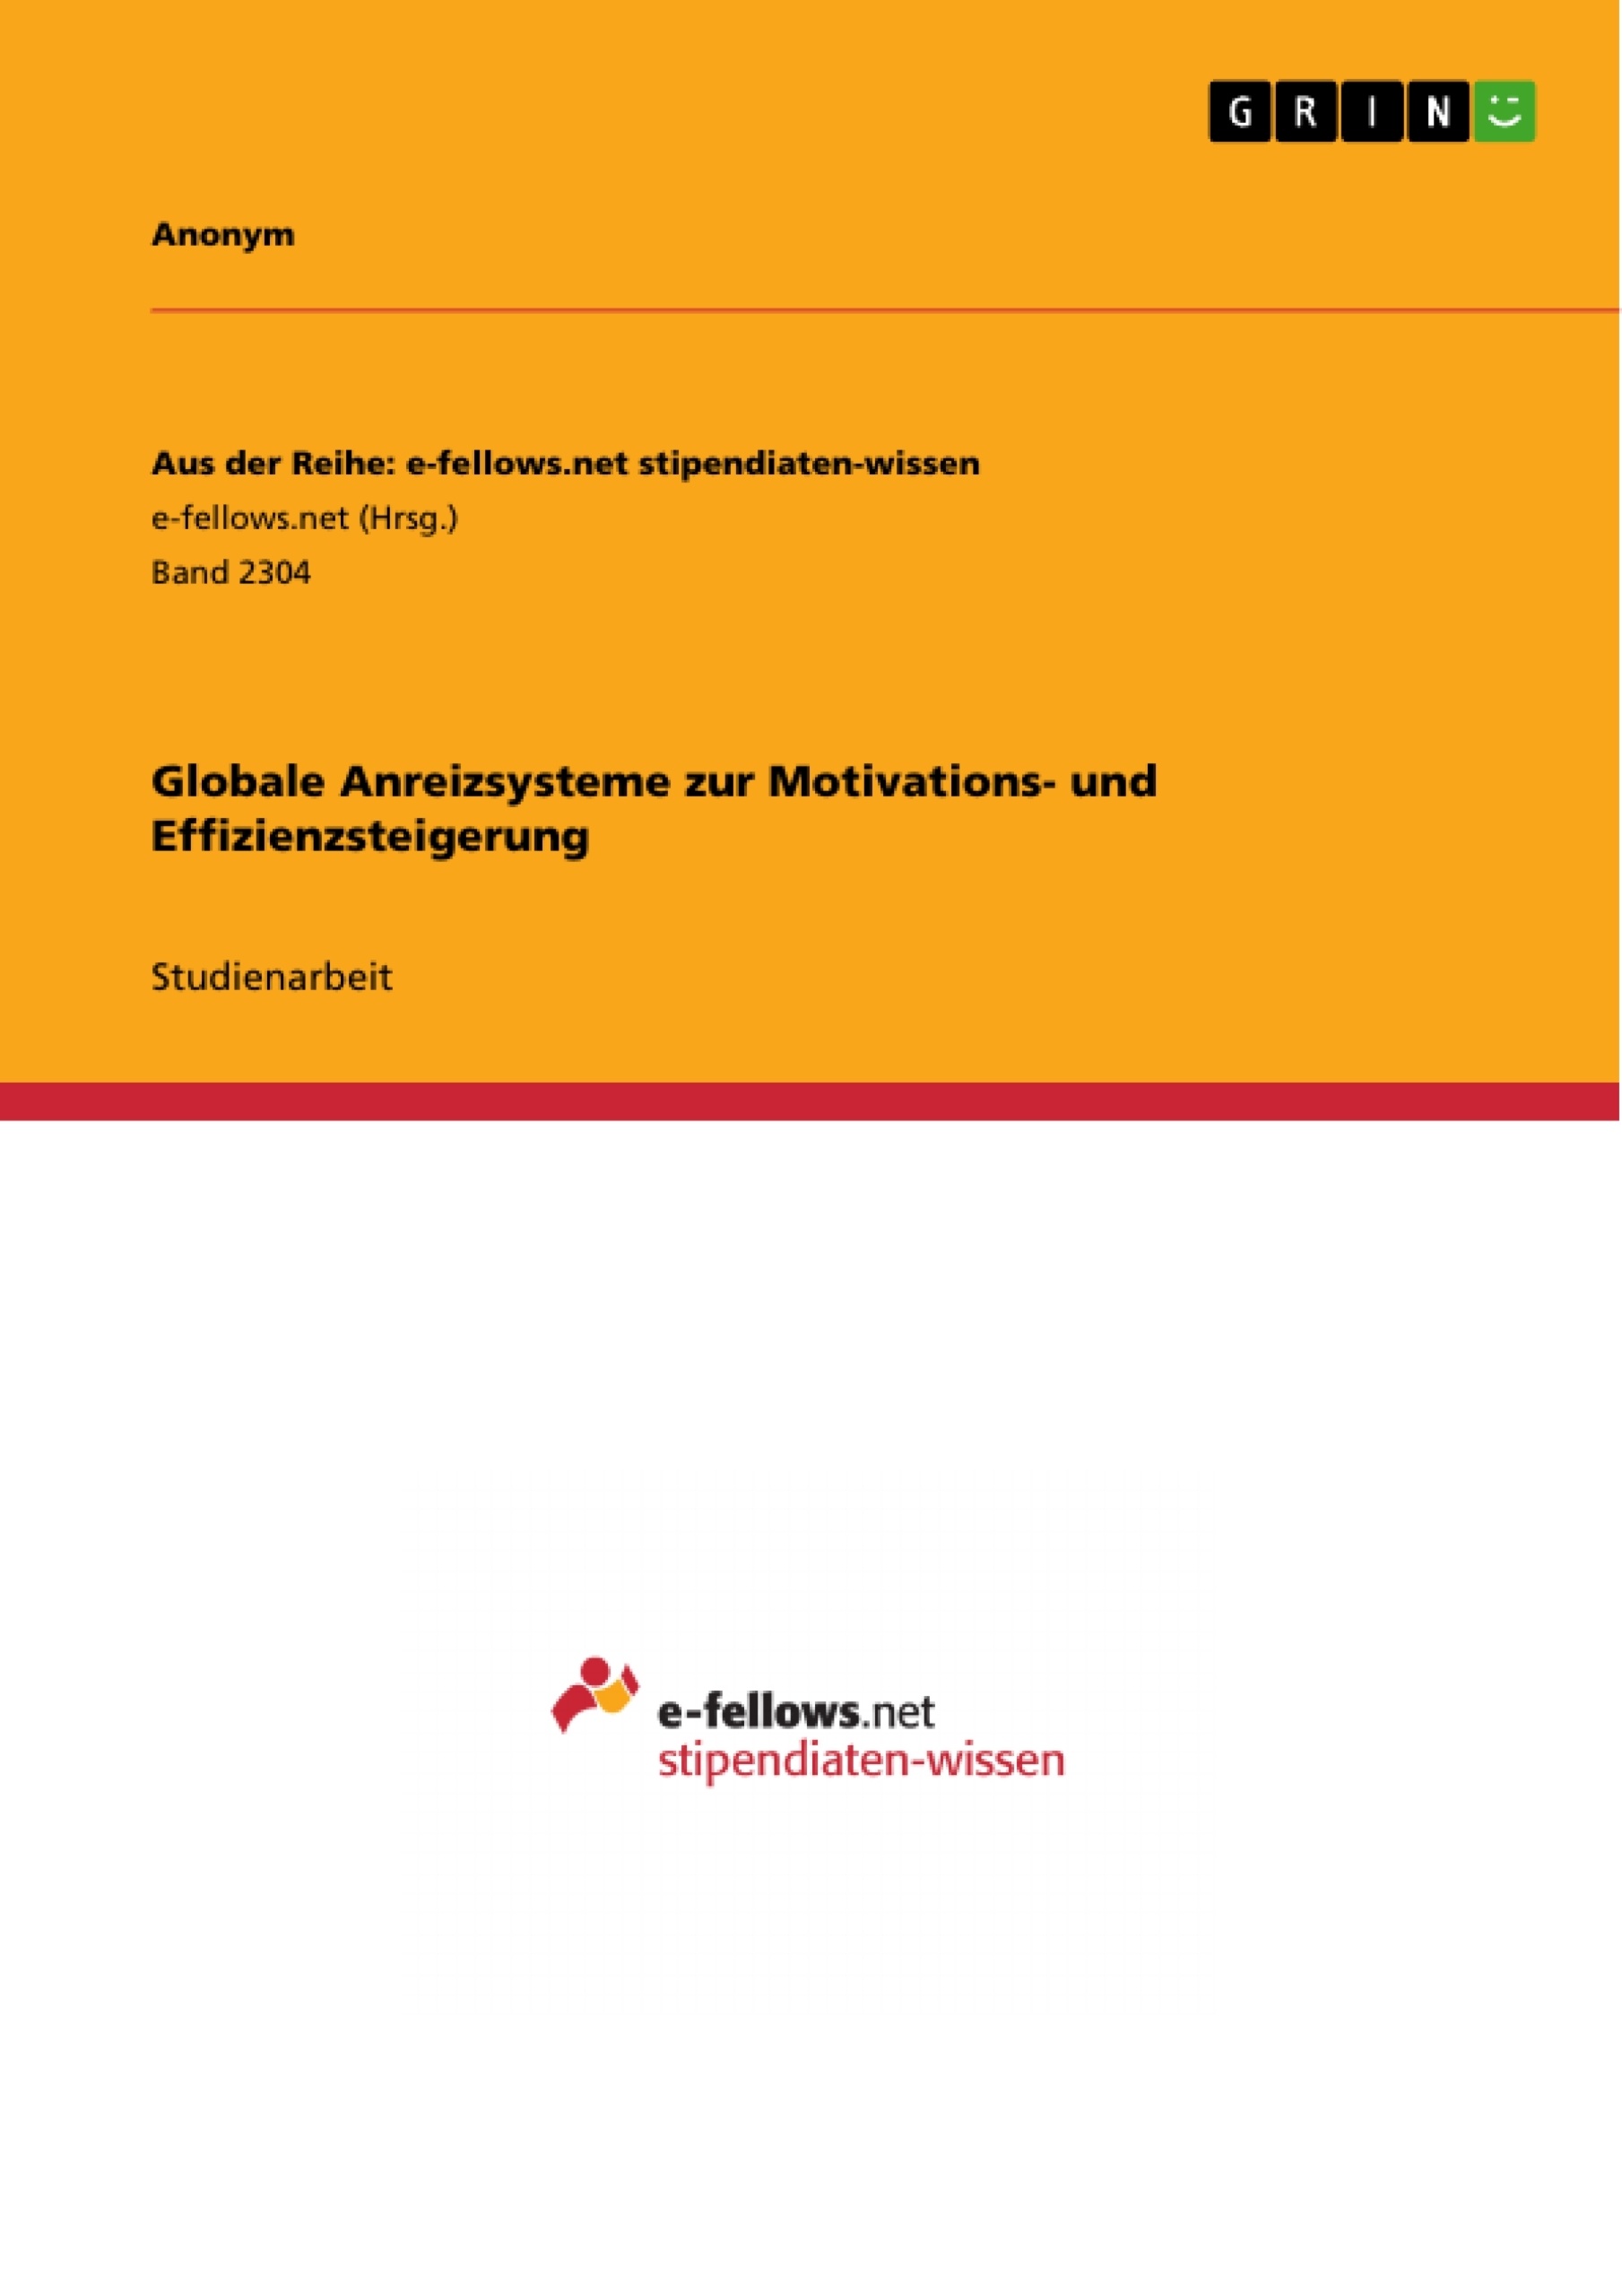 Title: Globale Anreizsysteme zur Motivations- und Effizienzsteigerung